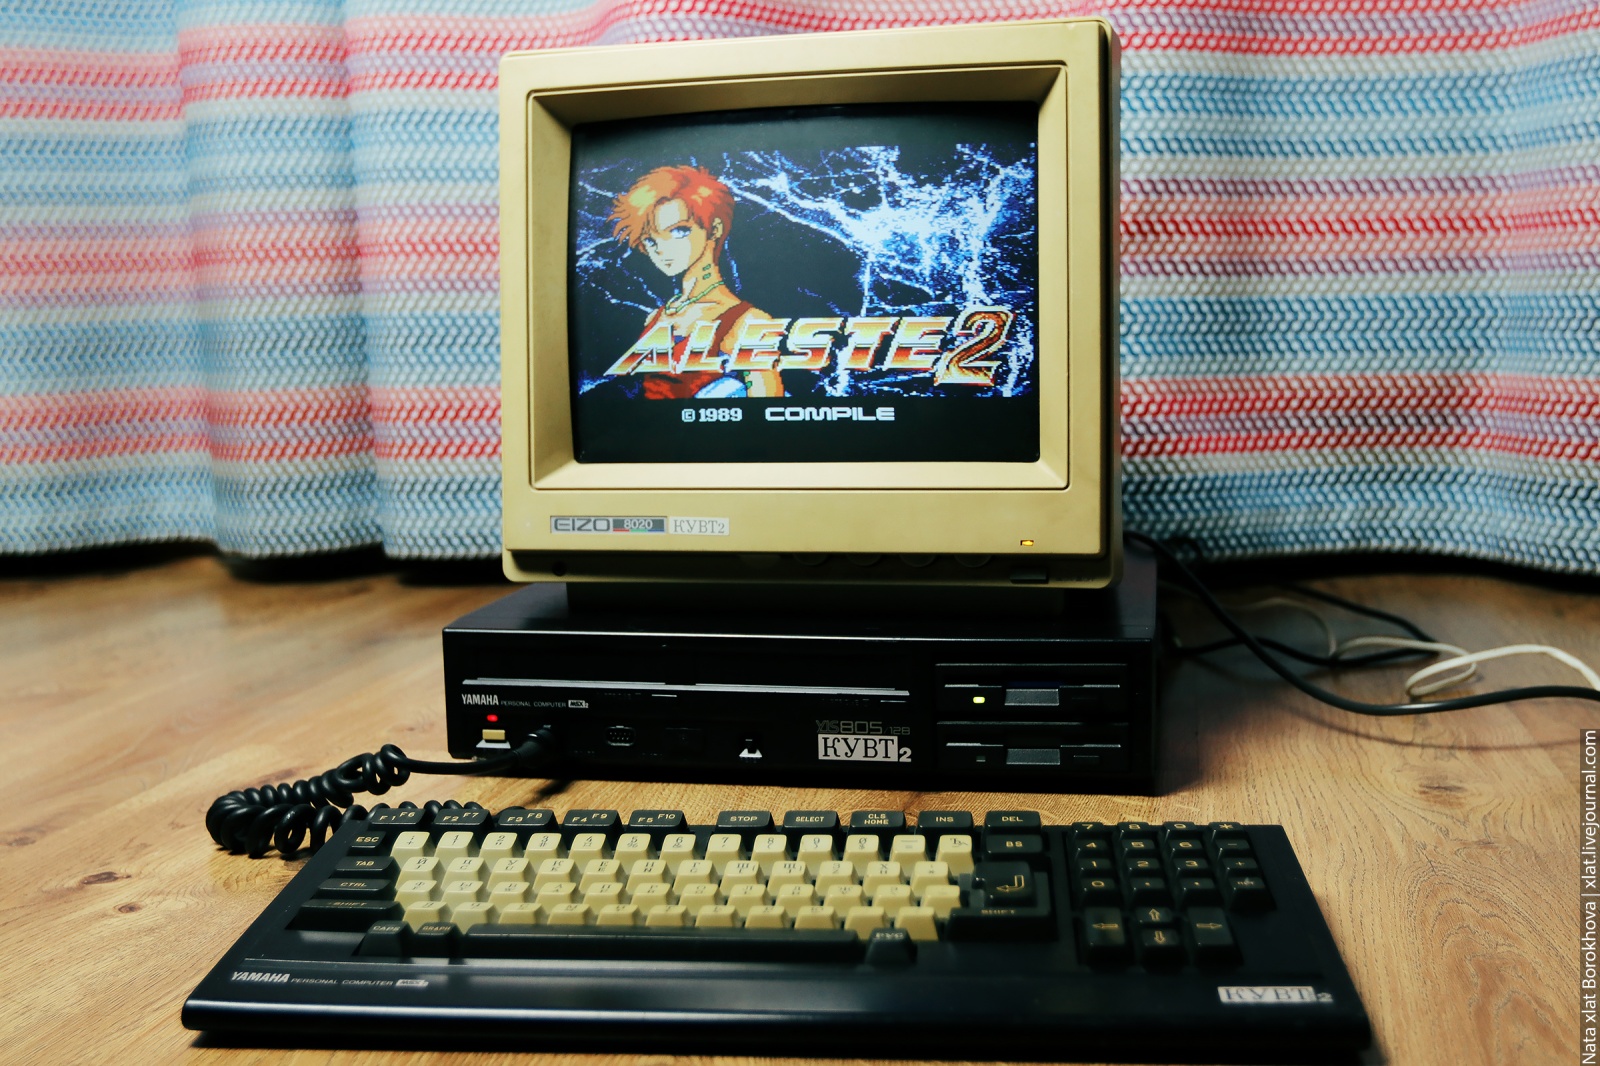 41 год платформе MSX. Компьютеры, на которых выросли поколения - 8